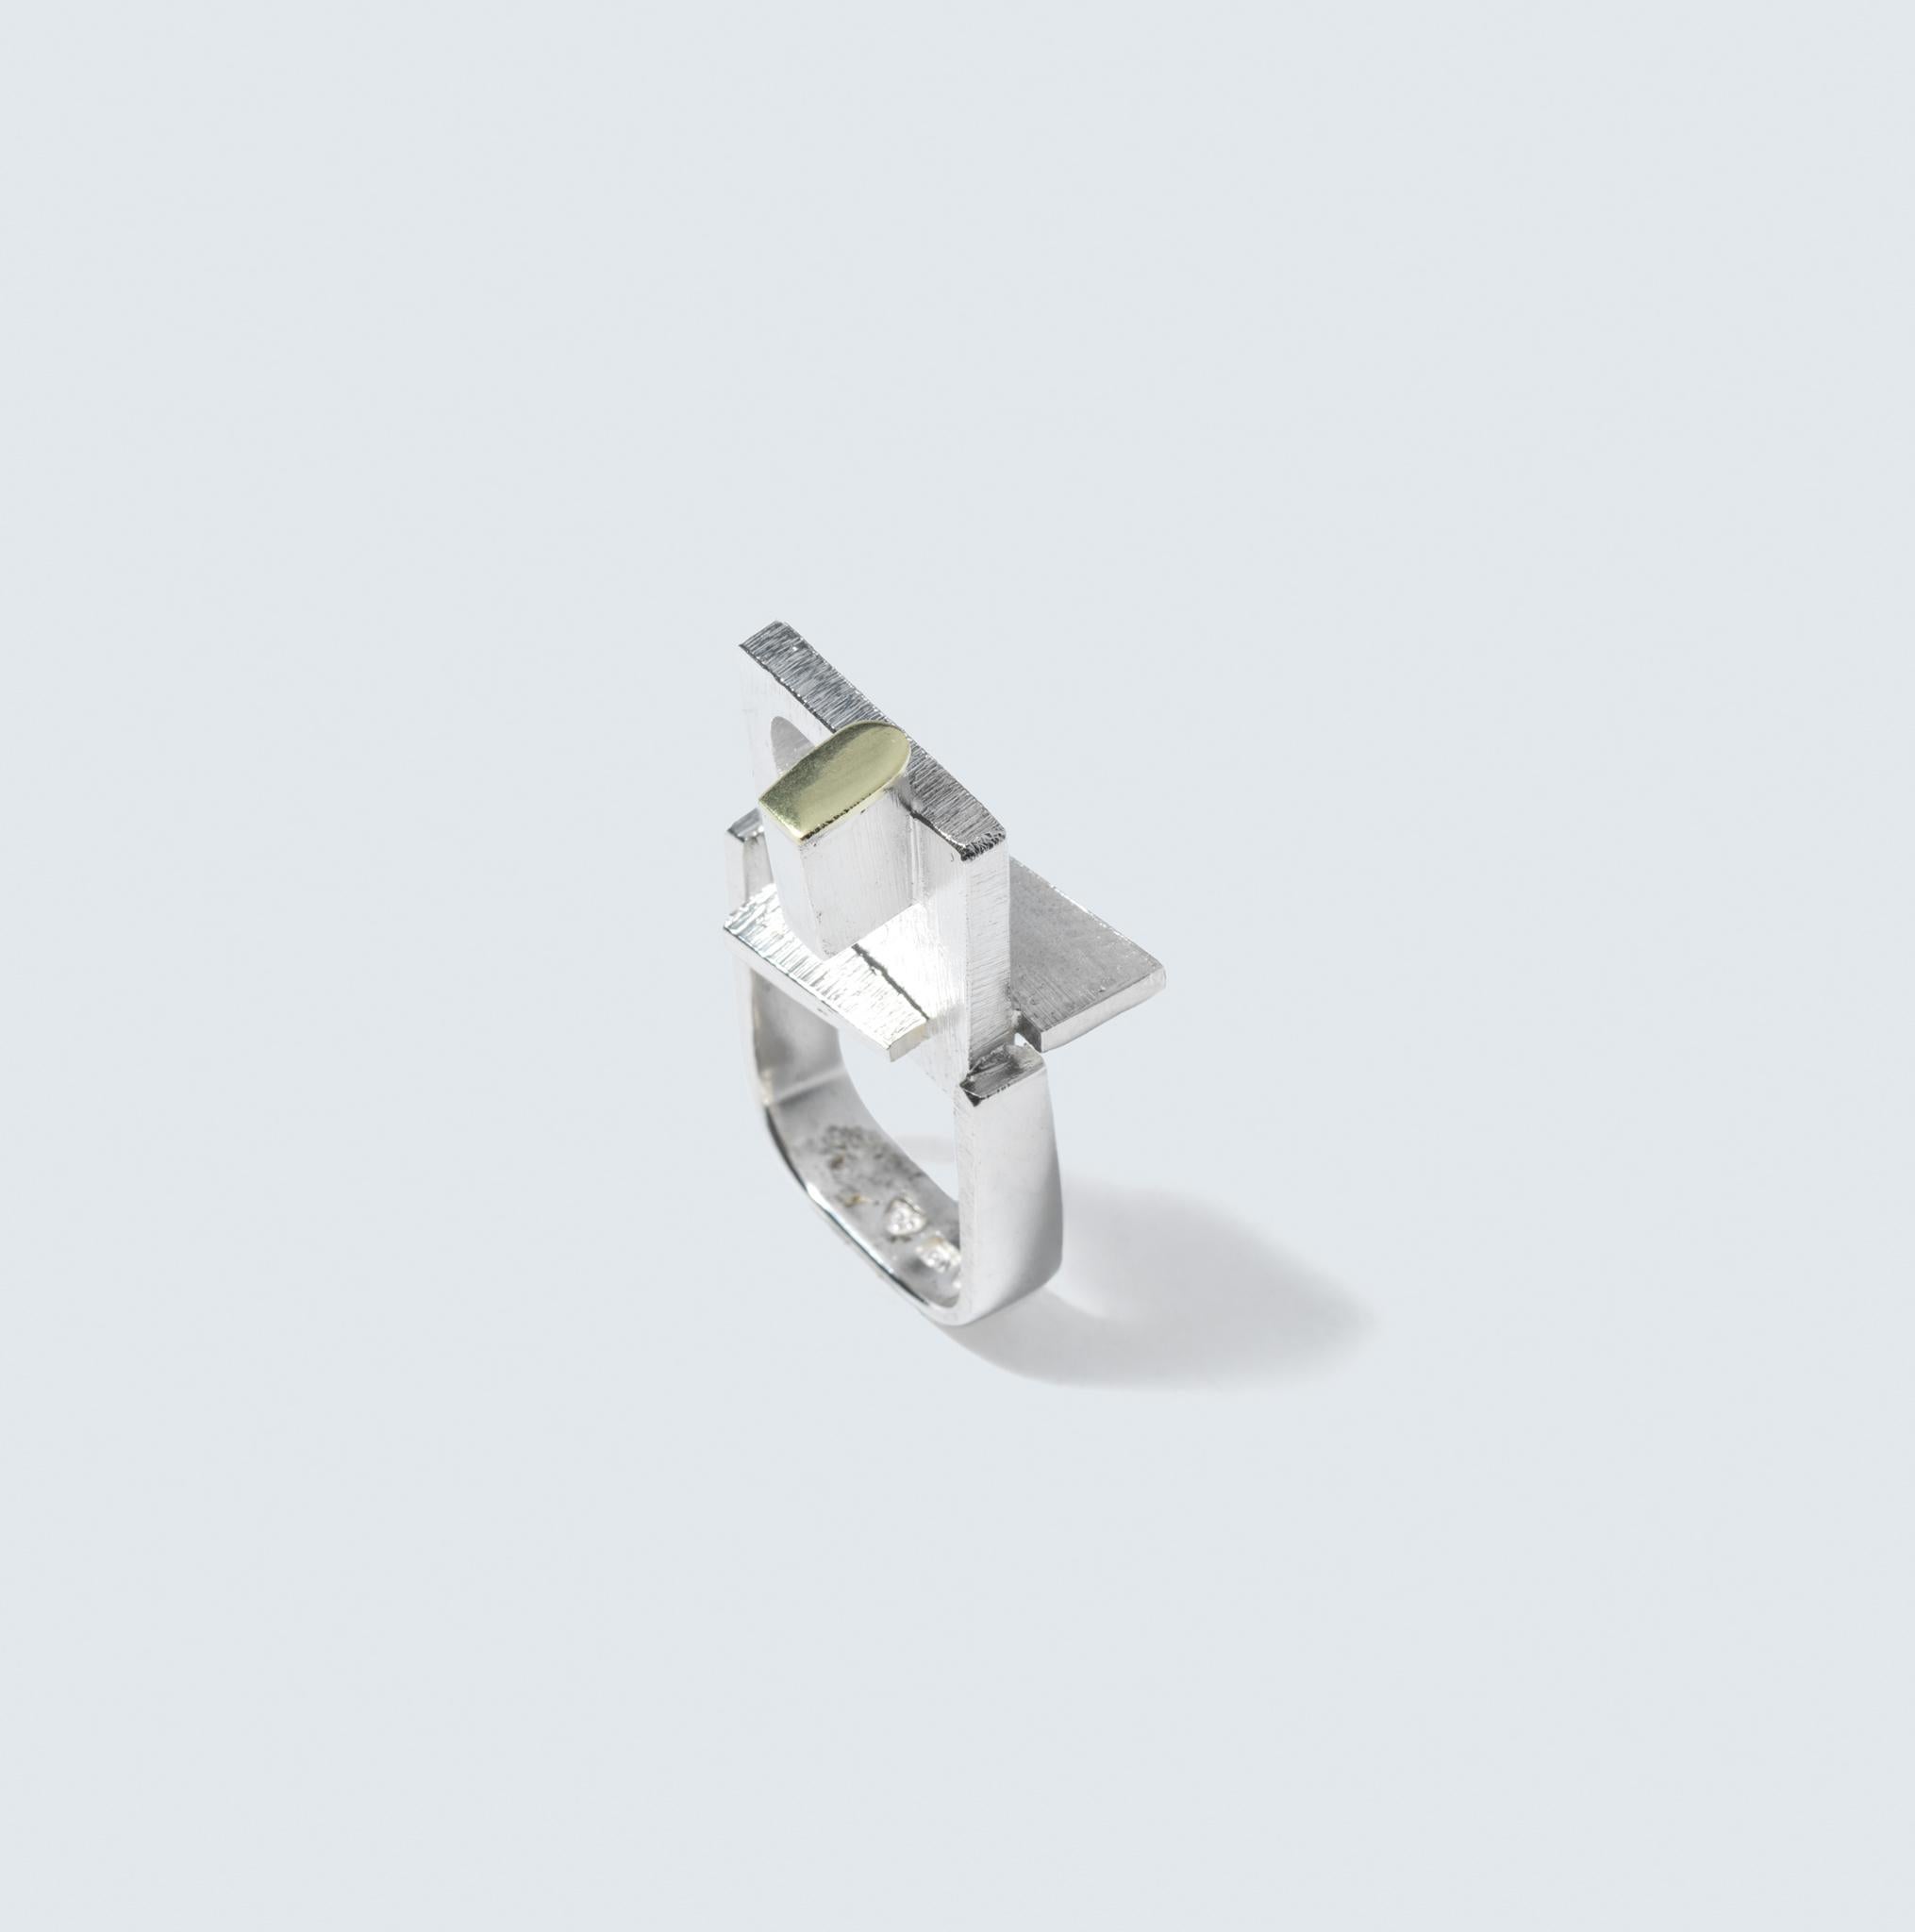 Ein einzigartiger Ring, der Silber und 18-karätiges Gold in einem industriellen Design miteinander verbindet. Das Band des Rings ist quadratisch und verleiht ihm ein modernes und strukturiertes Aussehen. In der Mitte befindet sich eine Anordnung